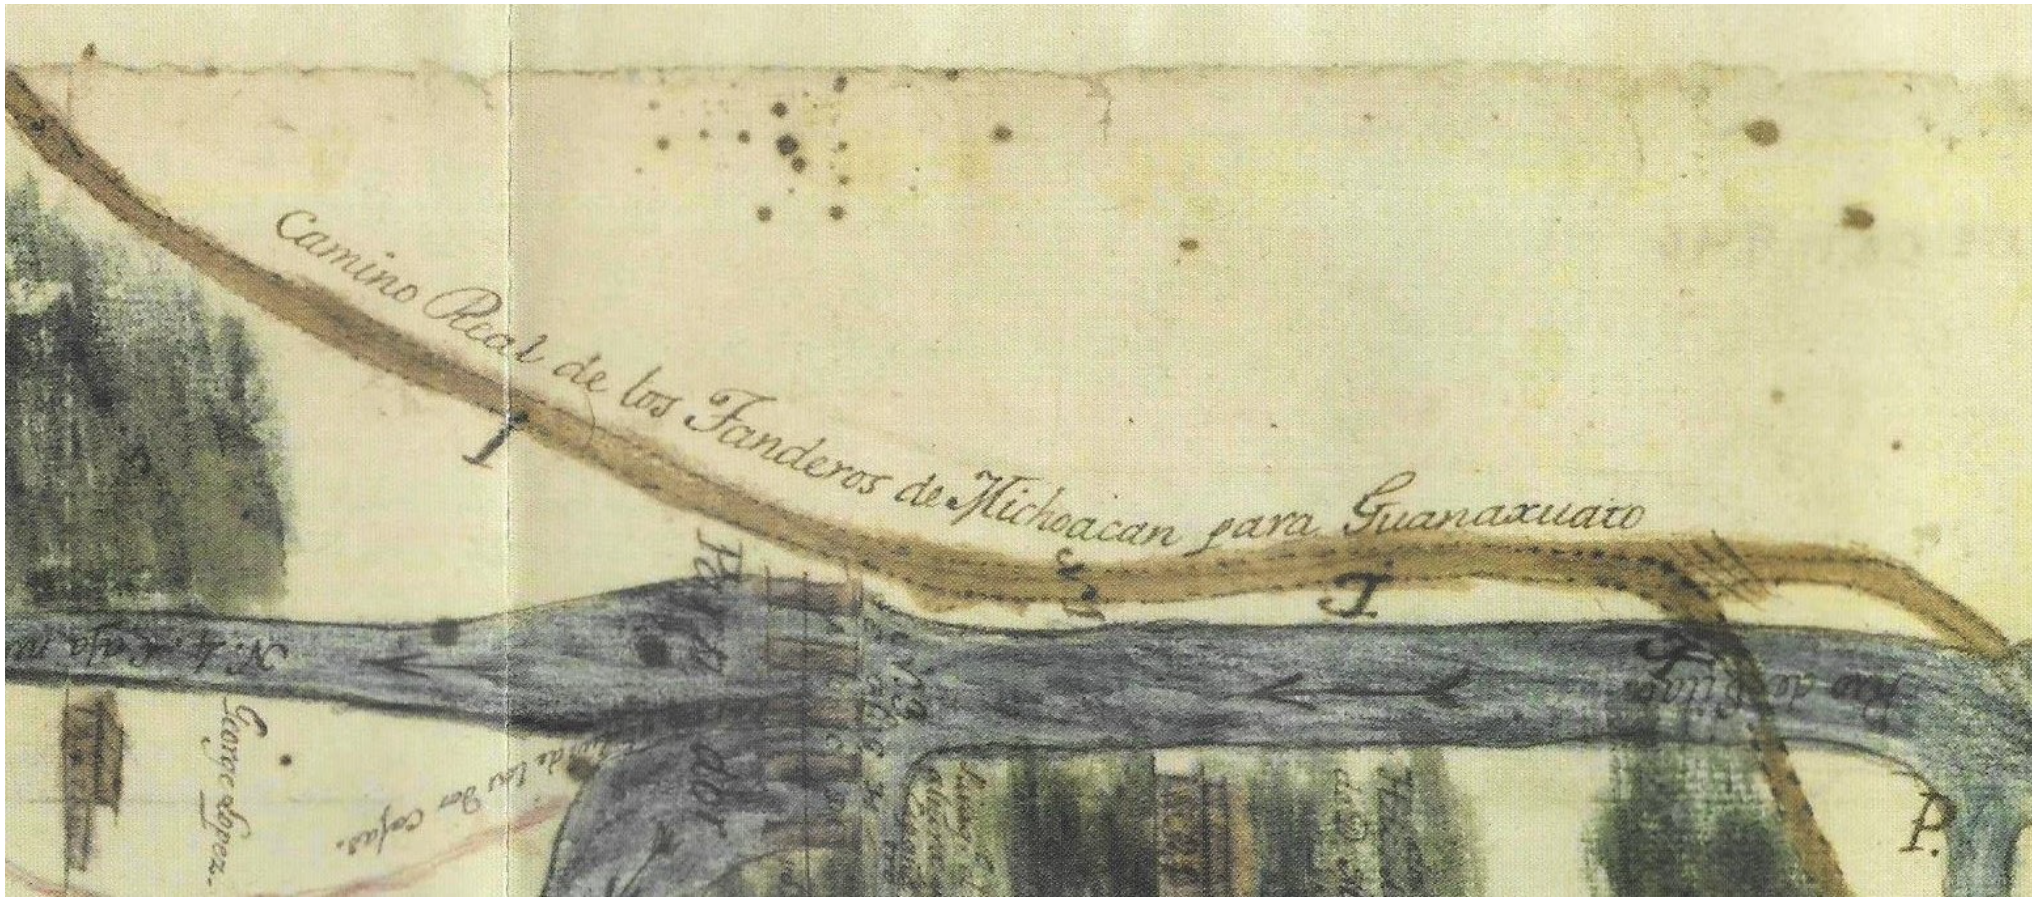 2. Descripción de las aguas superficiales de Irapuato, Guanajuato en mapa del año 1798, en Cruz Cuellar, María Teresa, Aguas superficiales de Irapuato 1754-1805 (descripción), 